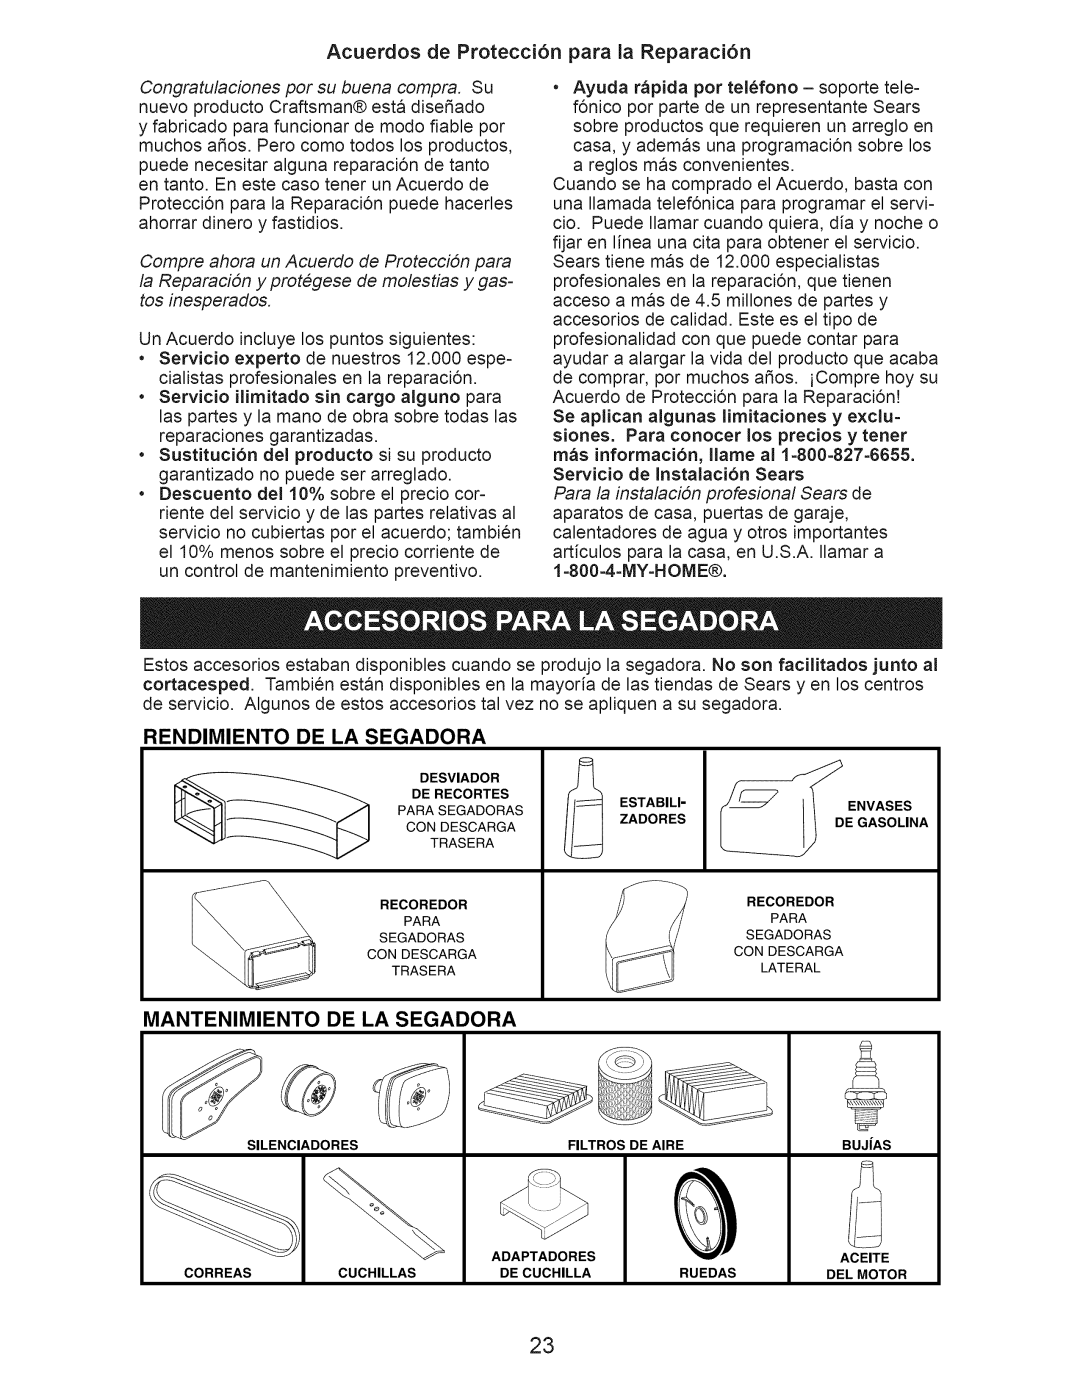 Craftsman 917.376403 manual Acuerdos de Protecci6n para la Reparaci6n, Rendimiento, De La Segadora, Mantenimiento 